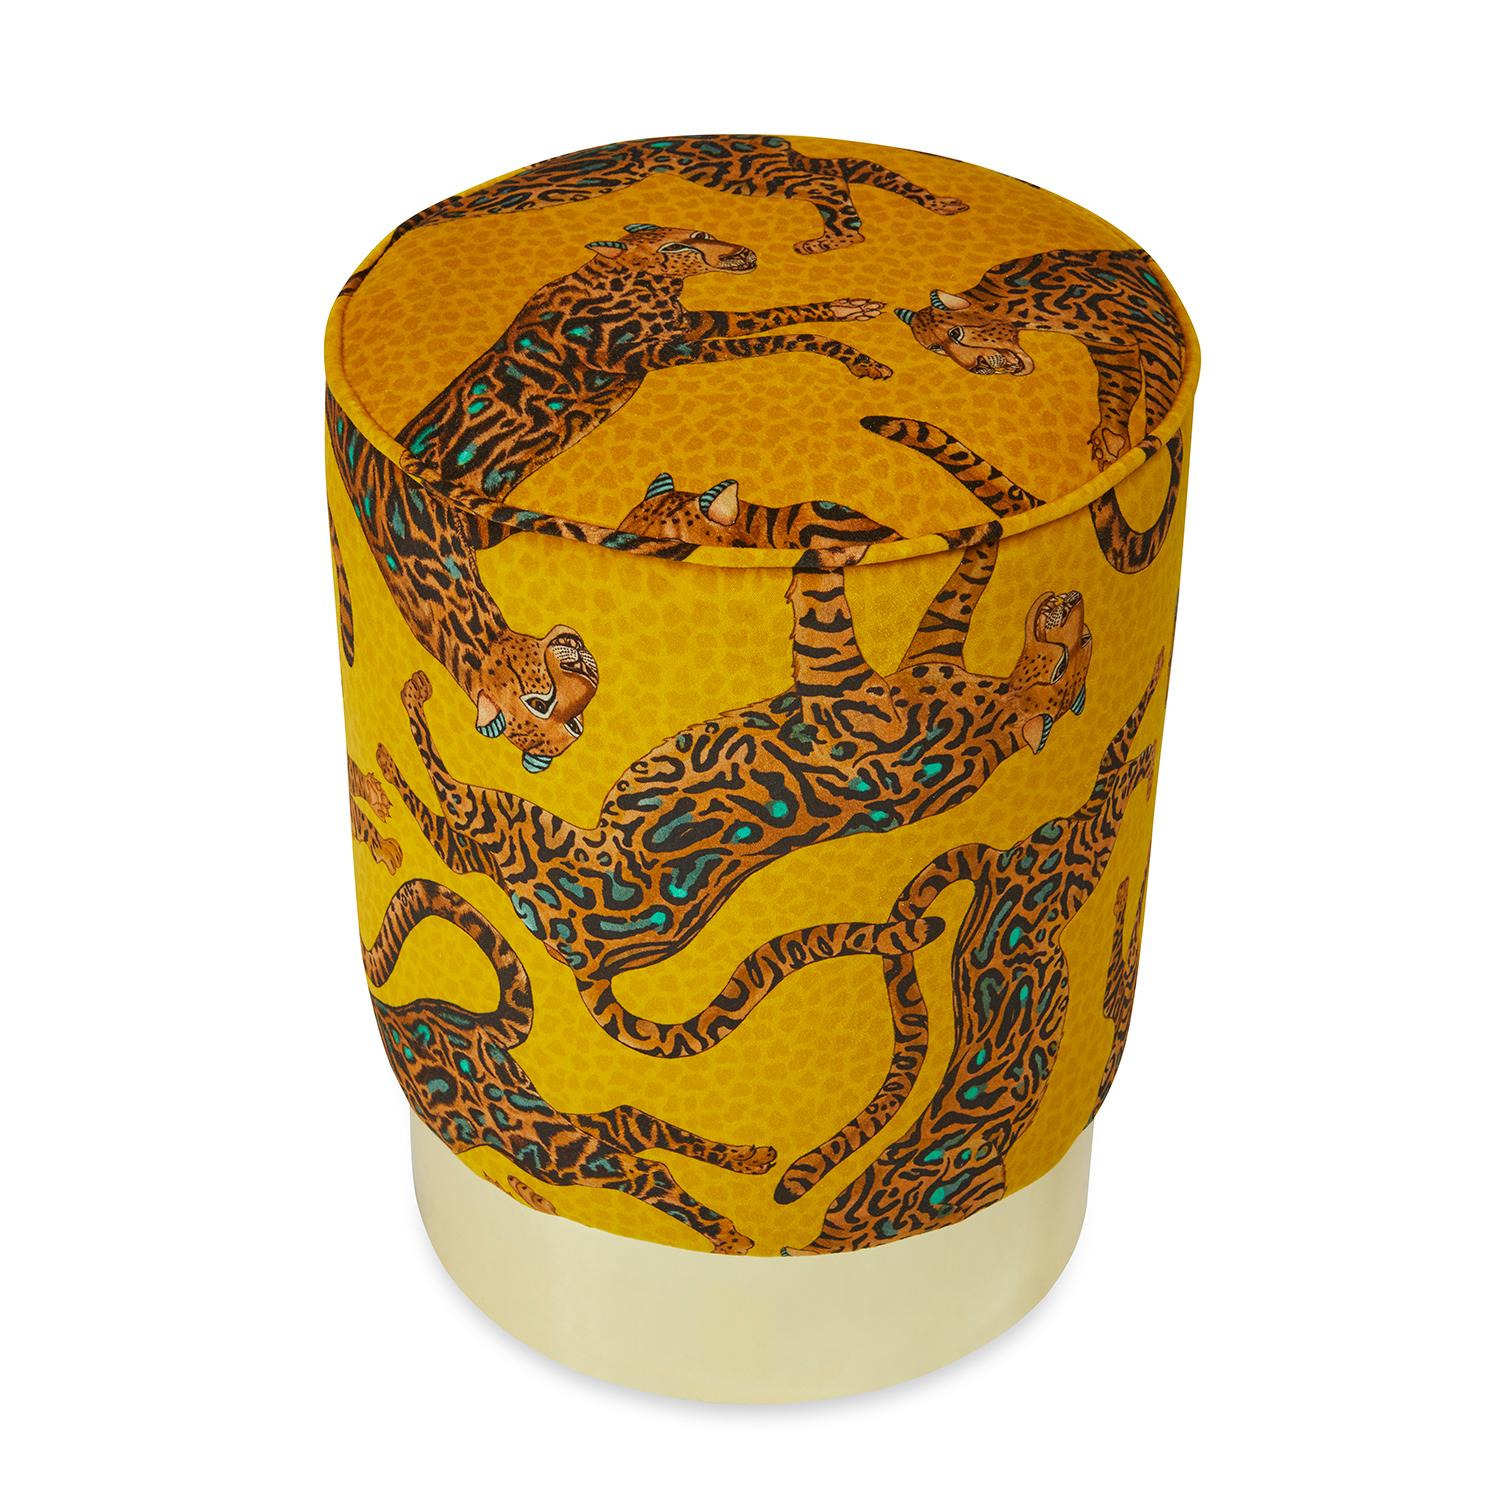 Ein luxuriöser, mit Cheetah Kings Gold Velvet Fabric bezogener Pouff mit einem Messingfuß.

Informationen zum Produkt
ABMESSUNGEN: 15